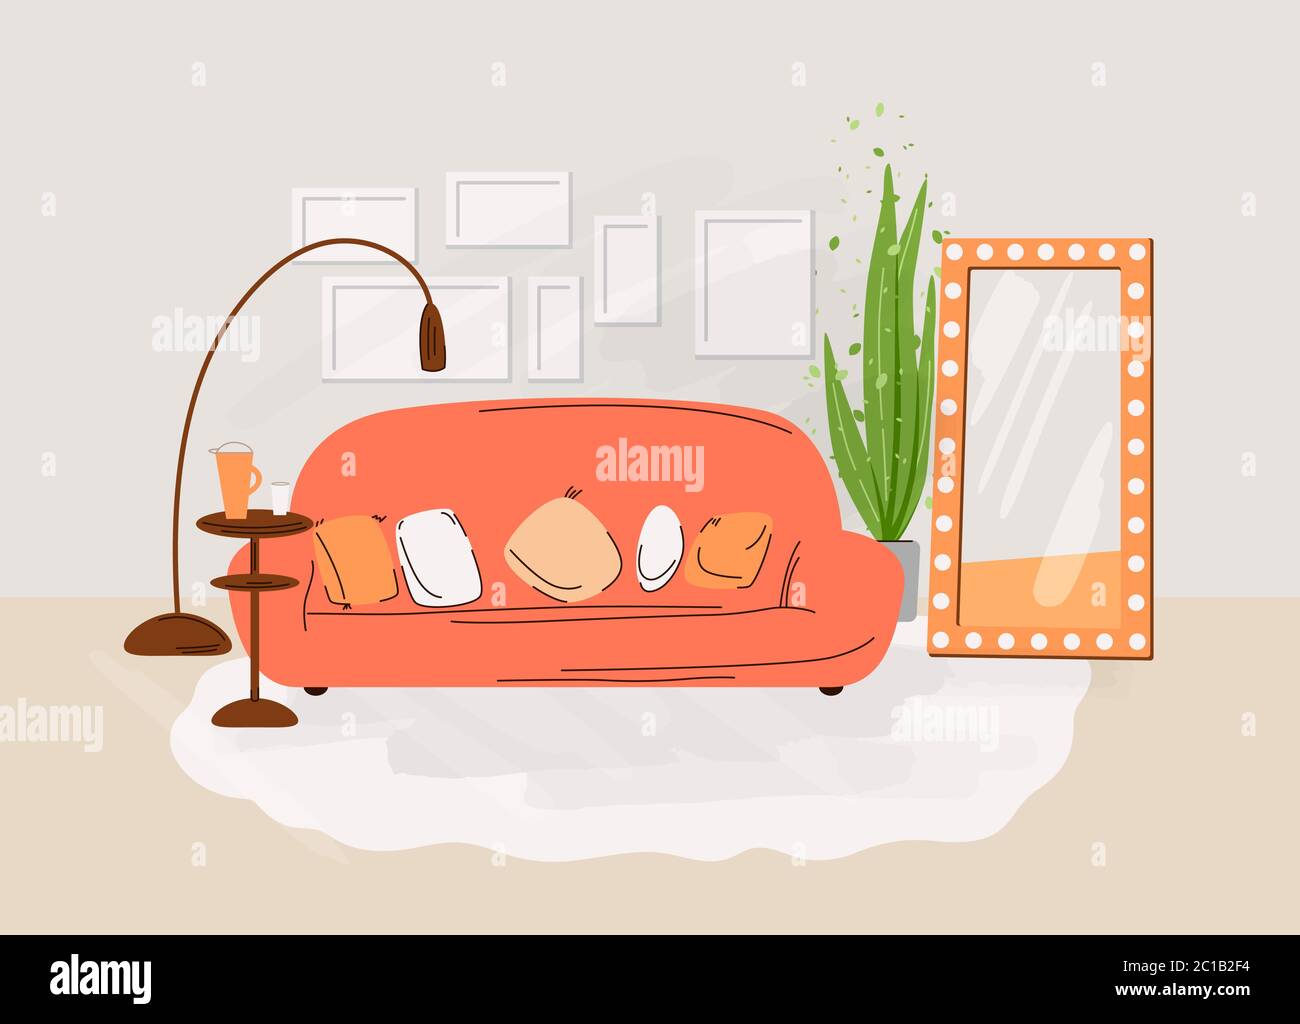 Interno del soggiorno. Illustrazione di un appartamento vettoriale con disegno di una stanza accogliente con divano, tavolo, scaffali con libri, piante e accessori di decorazione Illustrazione Vettoriale